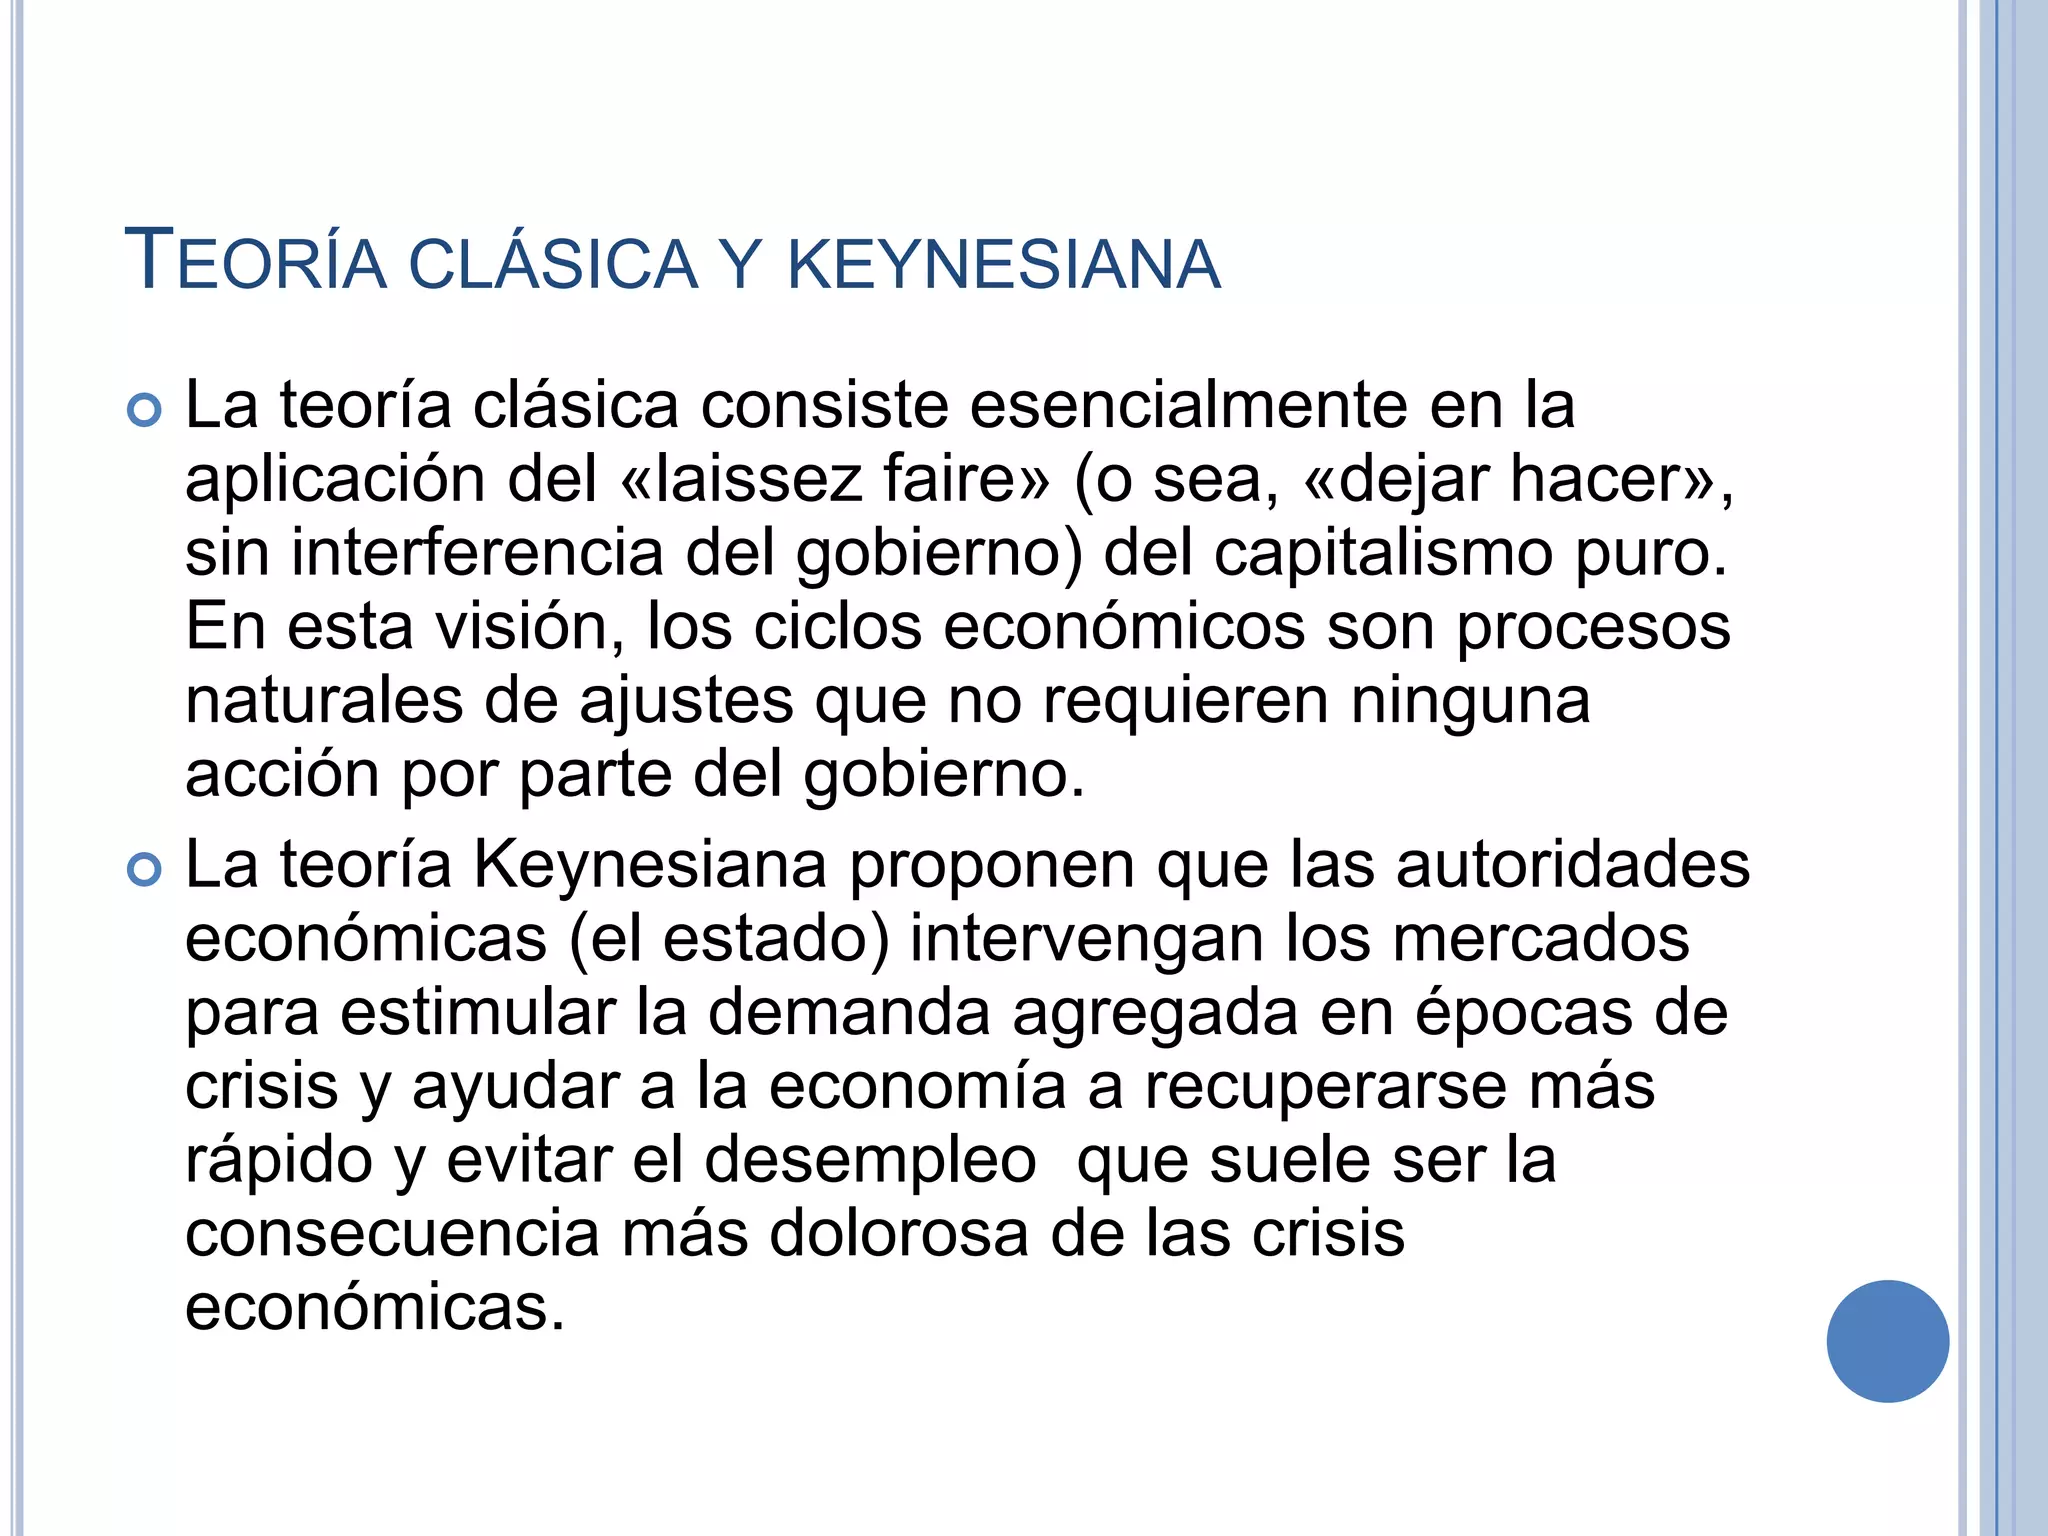 Clasico vs keynesiano